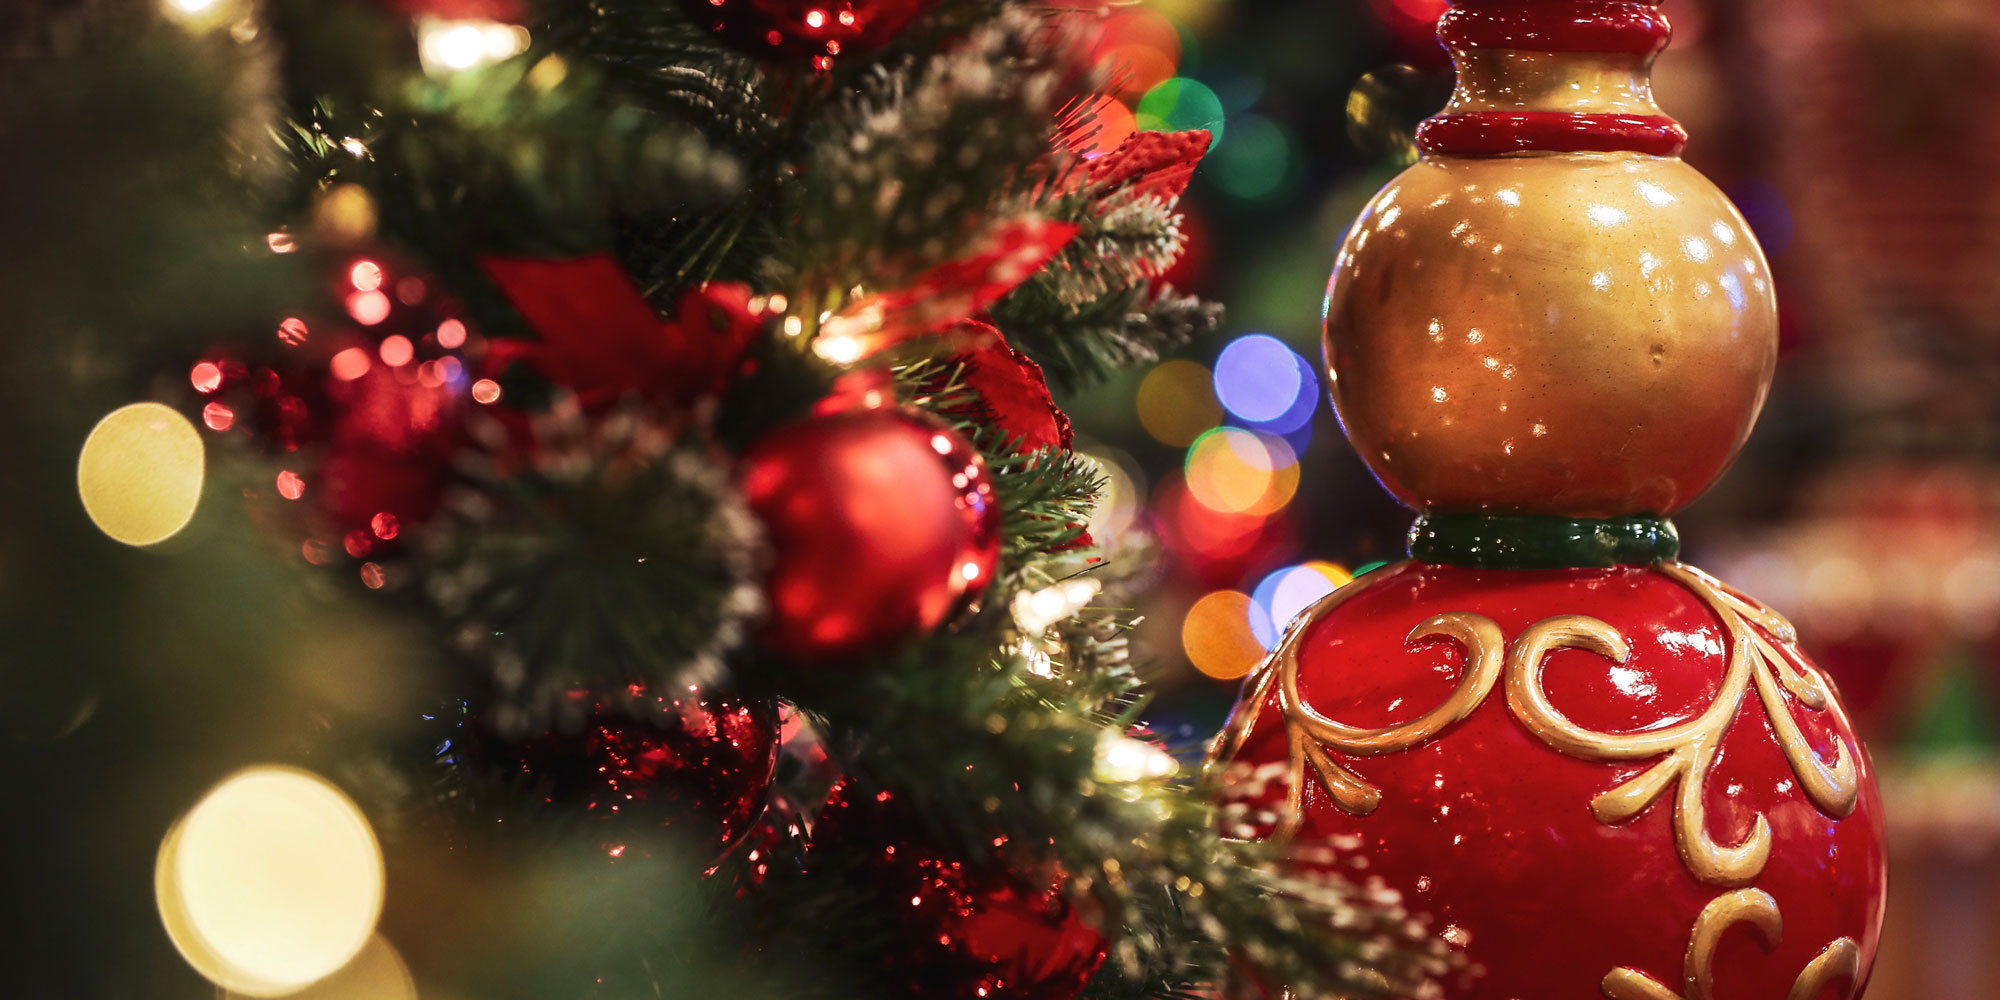 L'Emporio del Natale  Vendita alberi di natale e addobbi natalizi